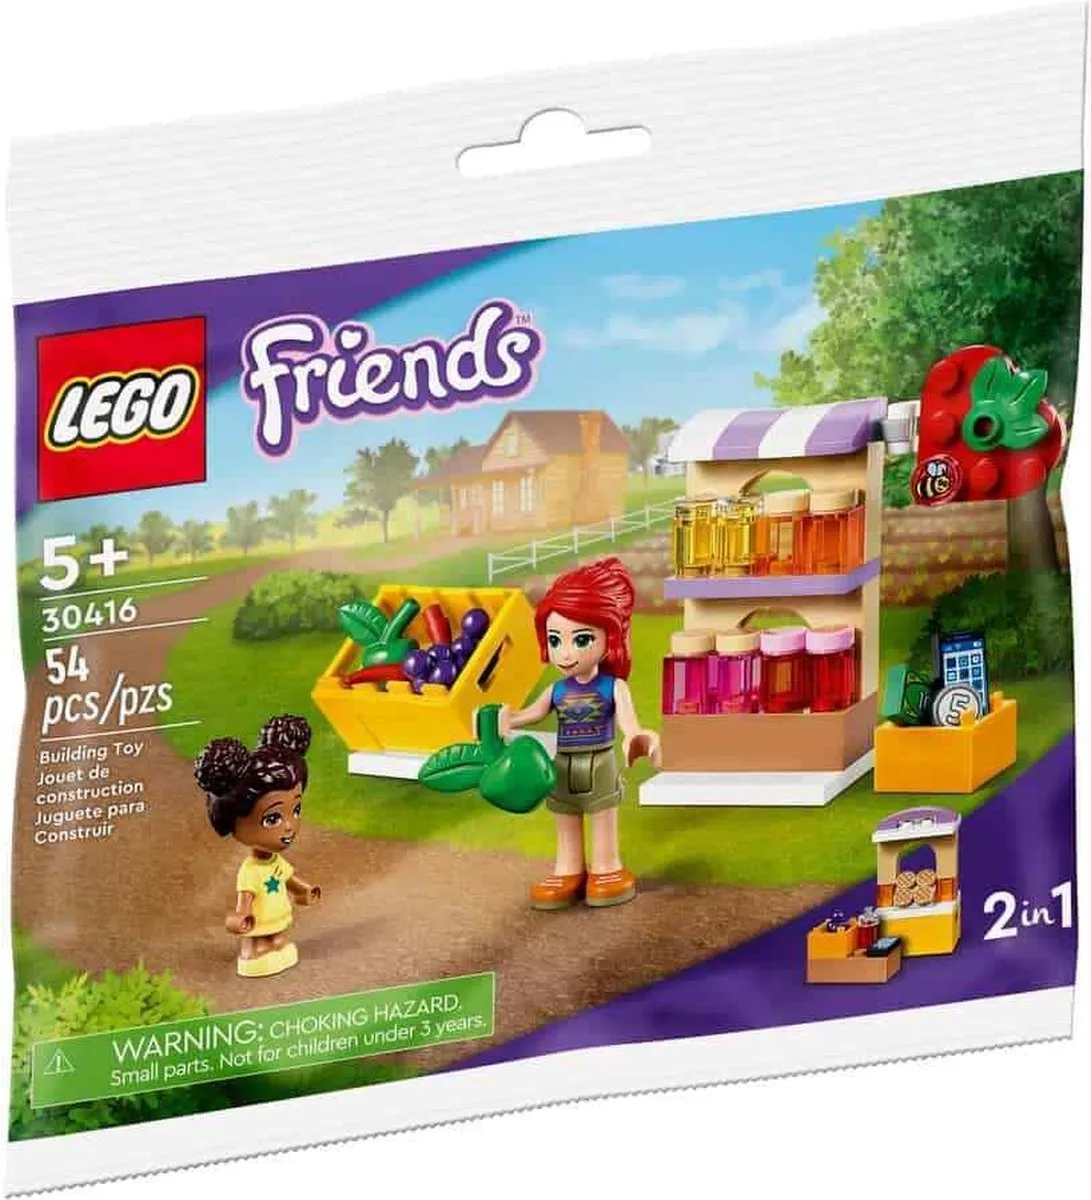 Lego Friends 30416 zakje met marktkraam + 2 mini figuren - biologische kraam of bakkerij winkel - Polybag speelgoed